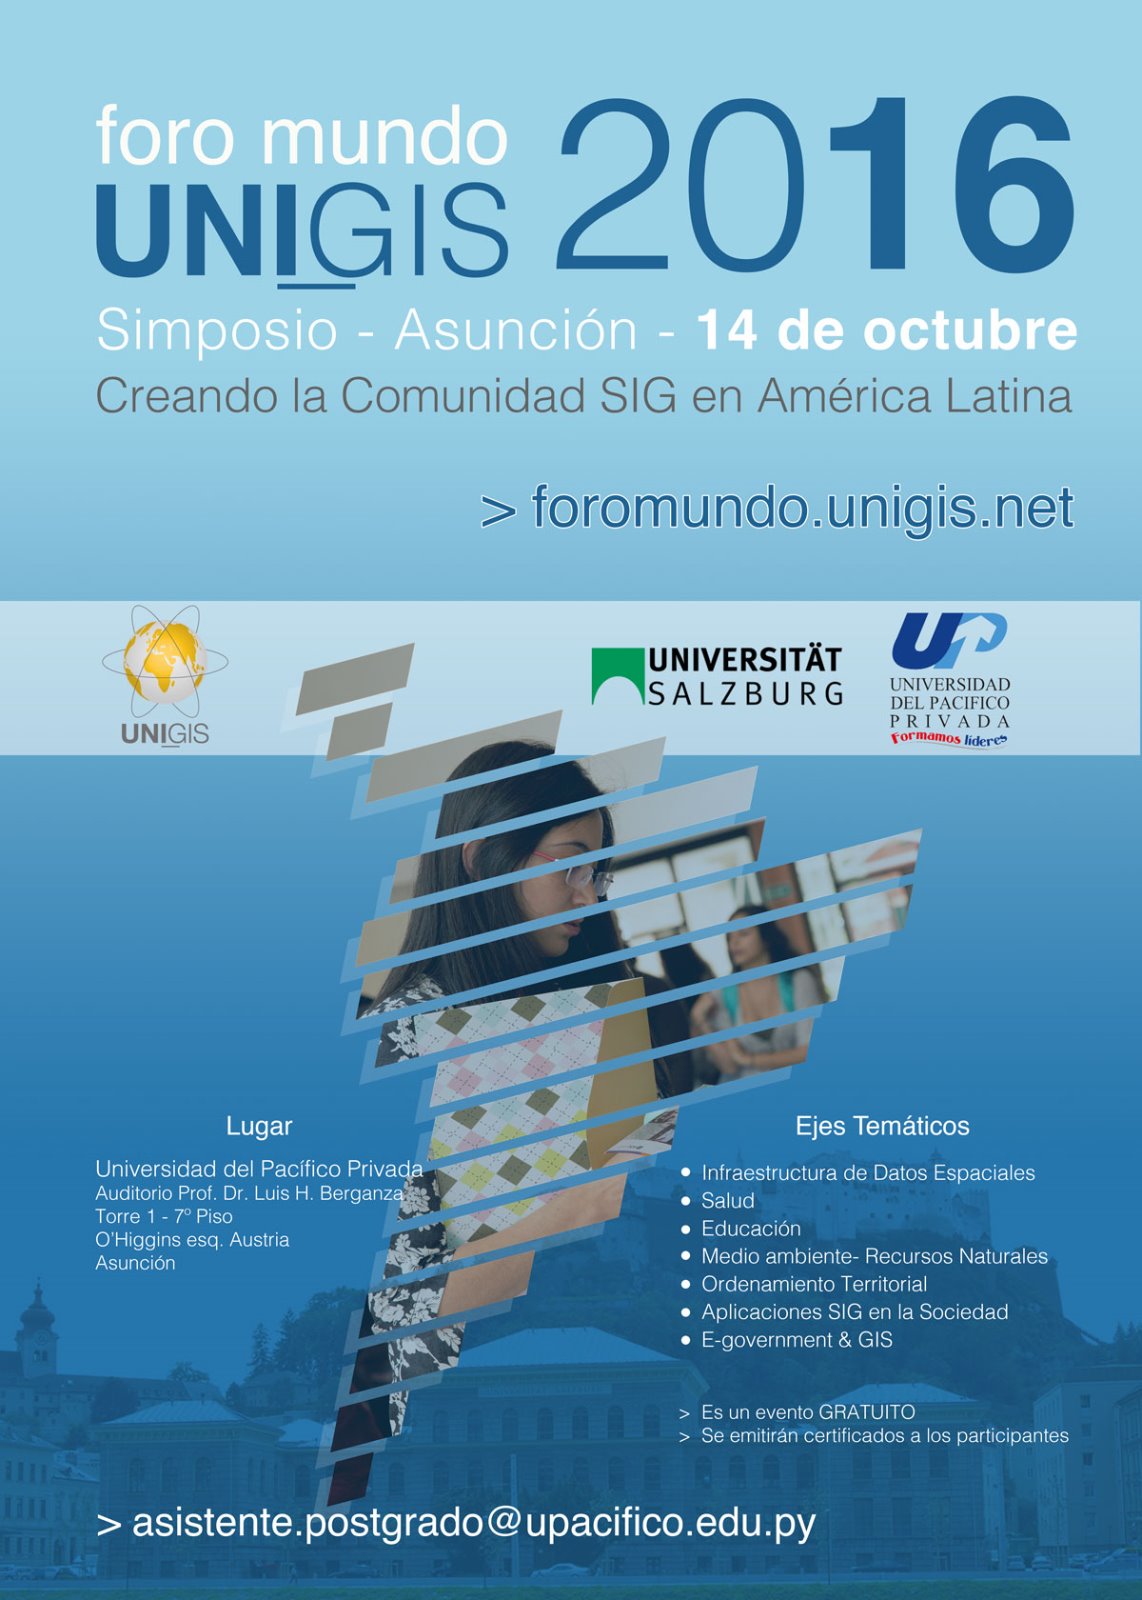 Foro Mundo UNIGIS 2016 - Simposio - Asunción - 14 de octubre